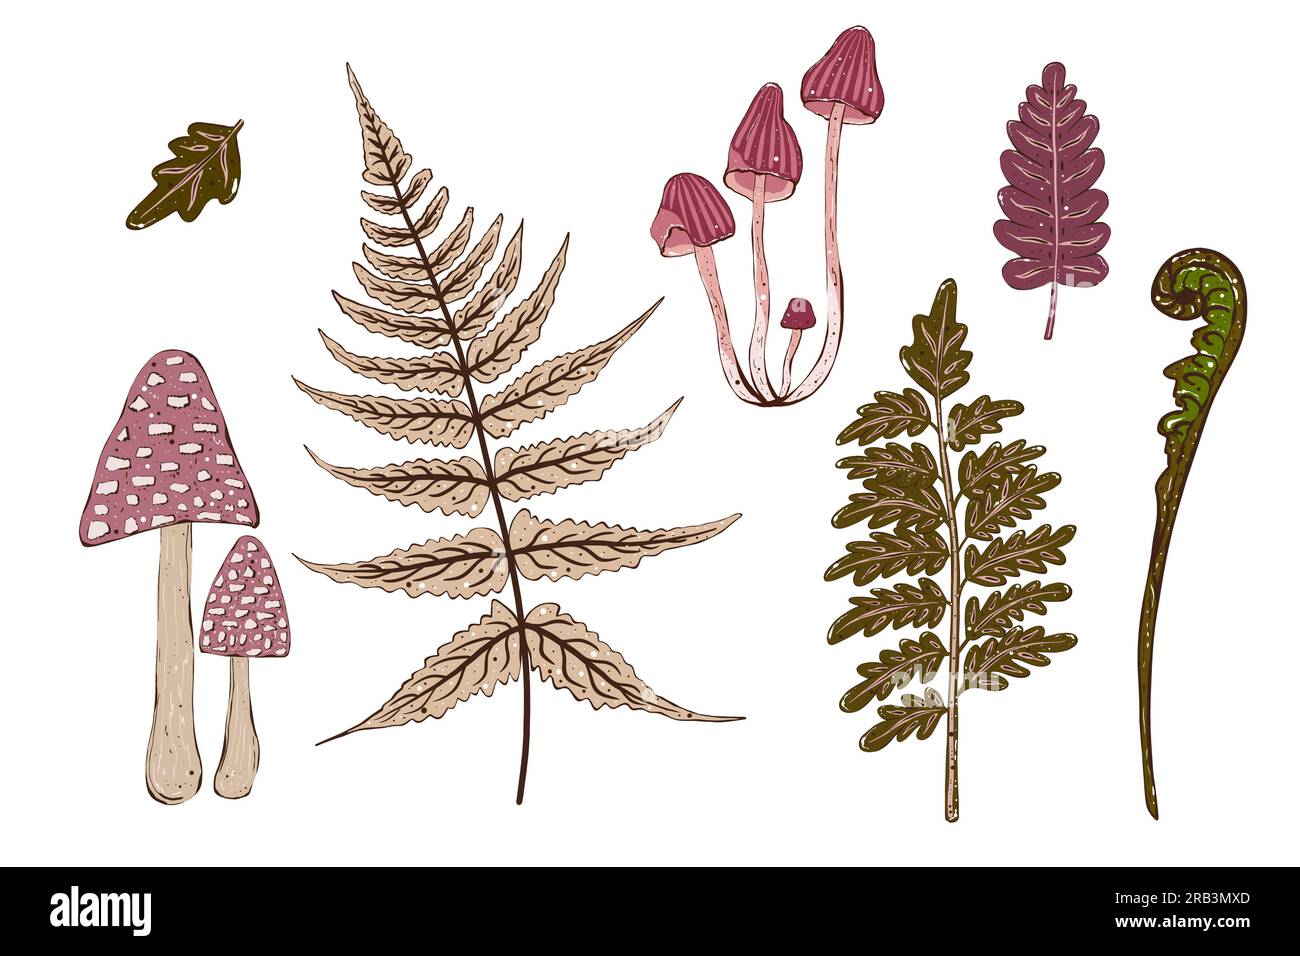 Ensemble de champignons décoratifs et de plantes. Illustration dessinée à la main, isolée. Banque D'Images